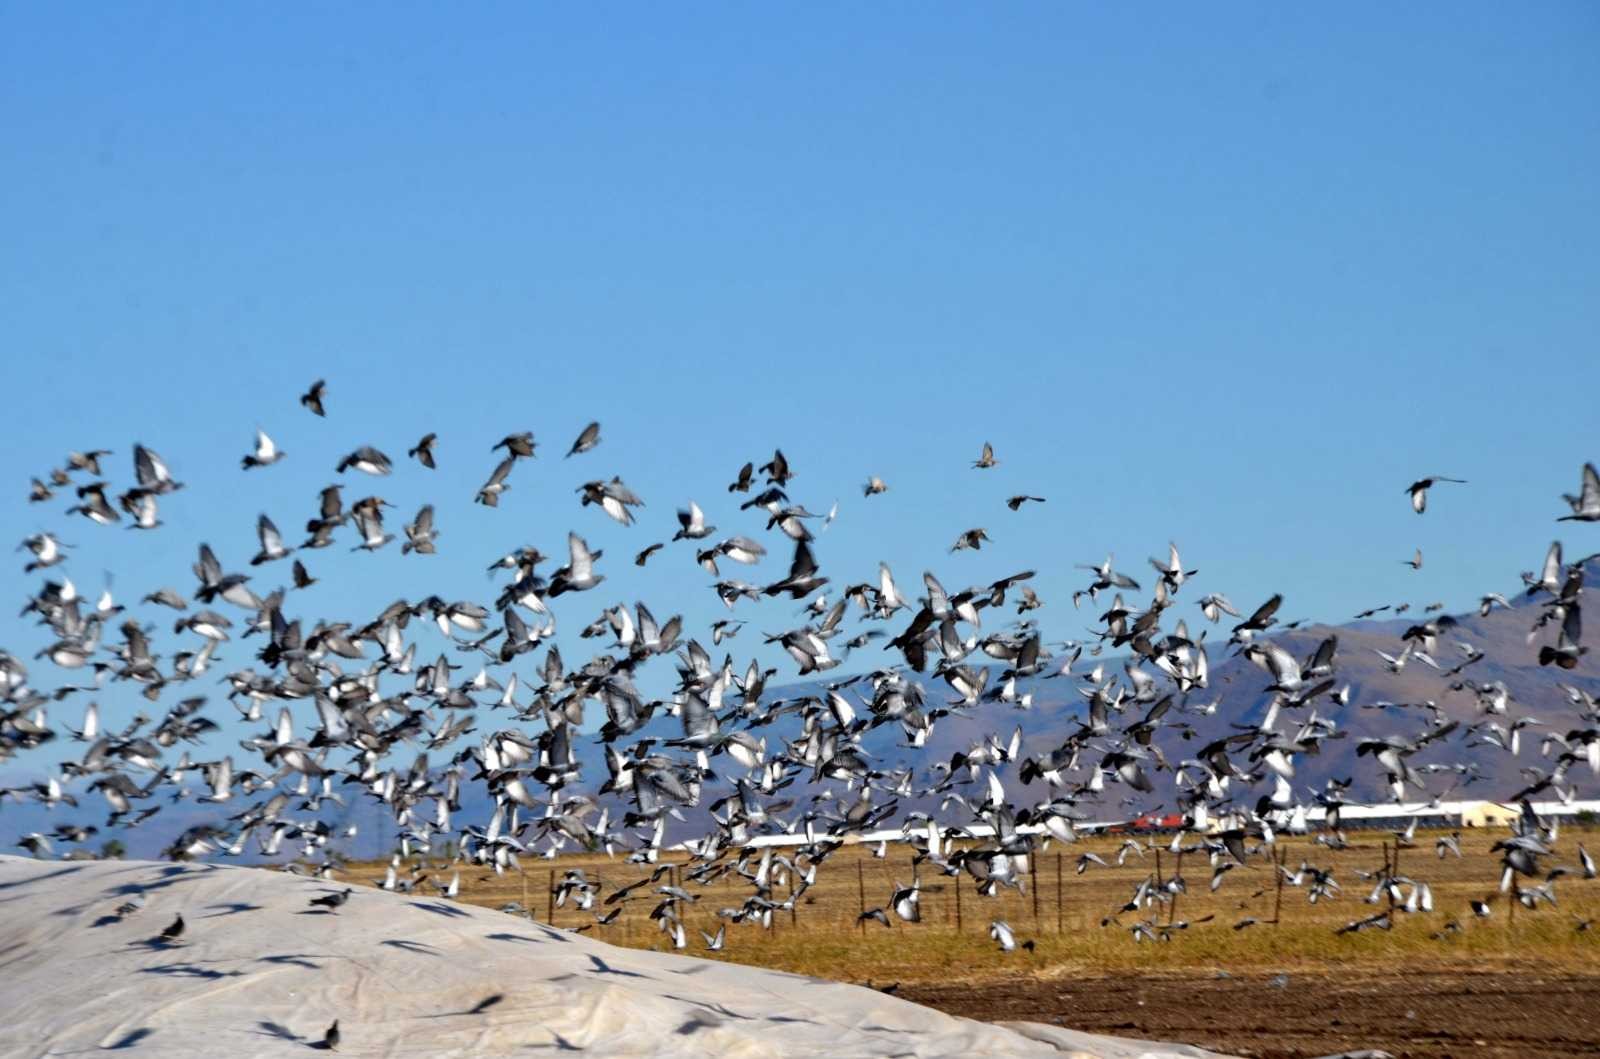 Muş’ta binlerce kuş hasadı yapılan tahıl yığınlarını mesken tuttu #mus